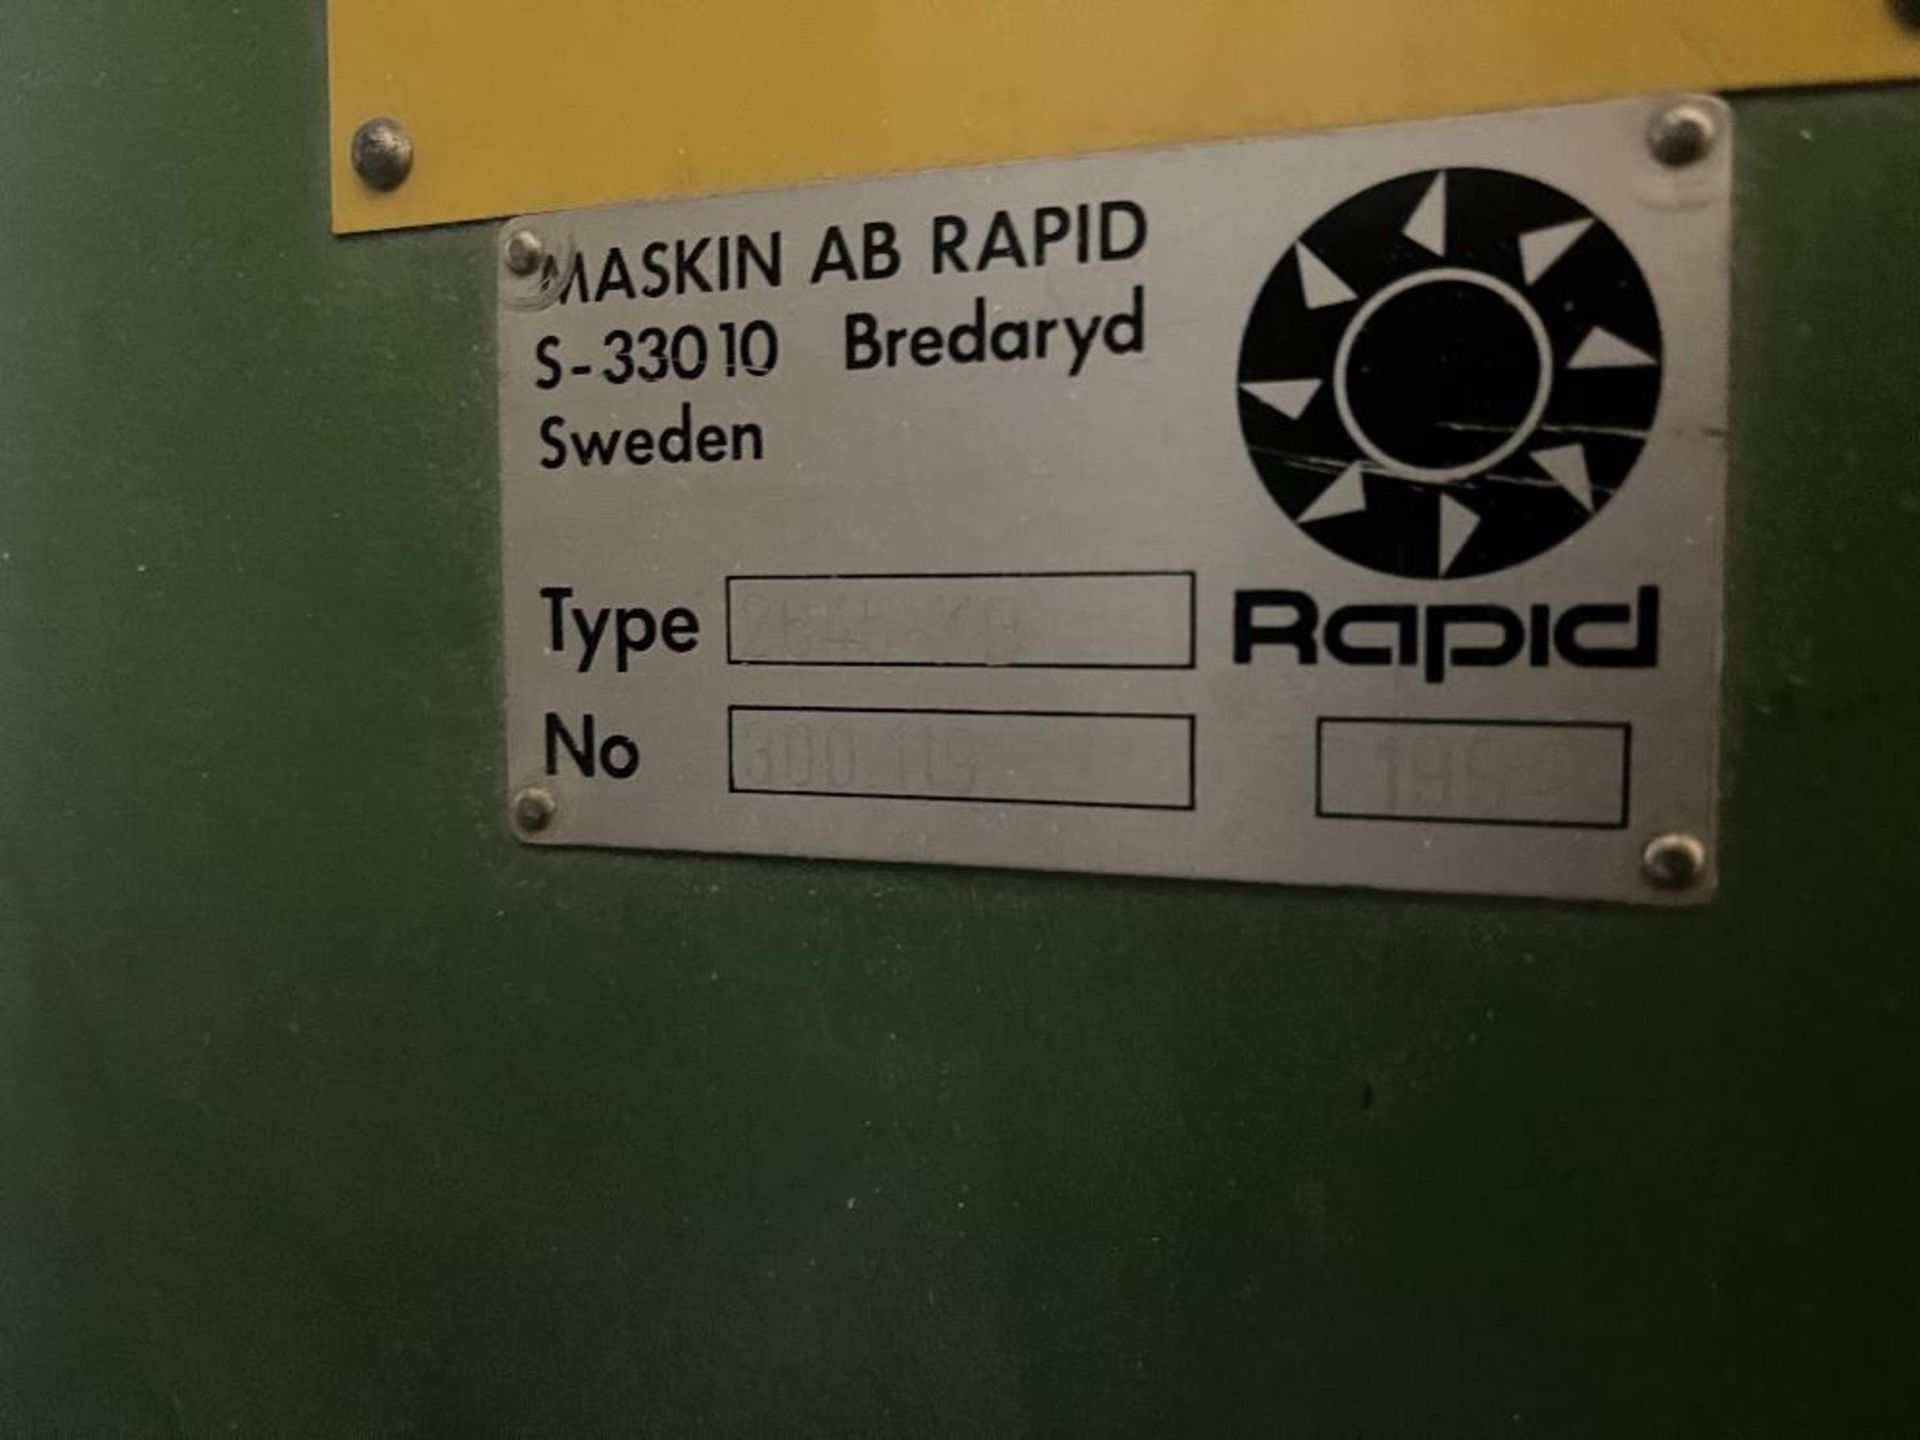 MASKIN AB Rapid plastics regrind machine - Image 5 of 7